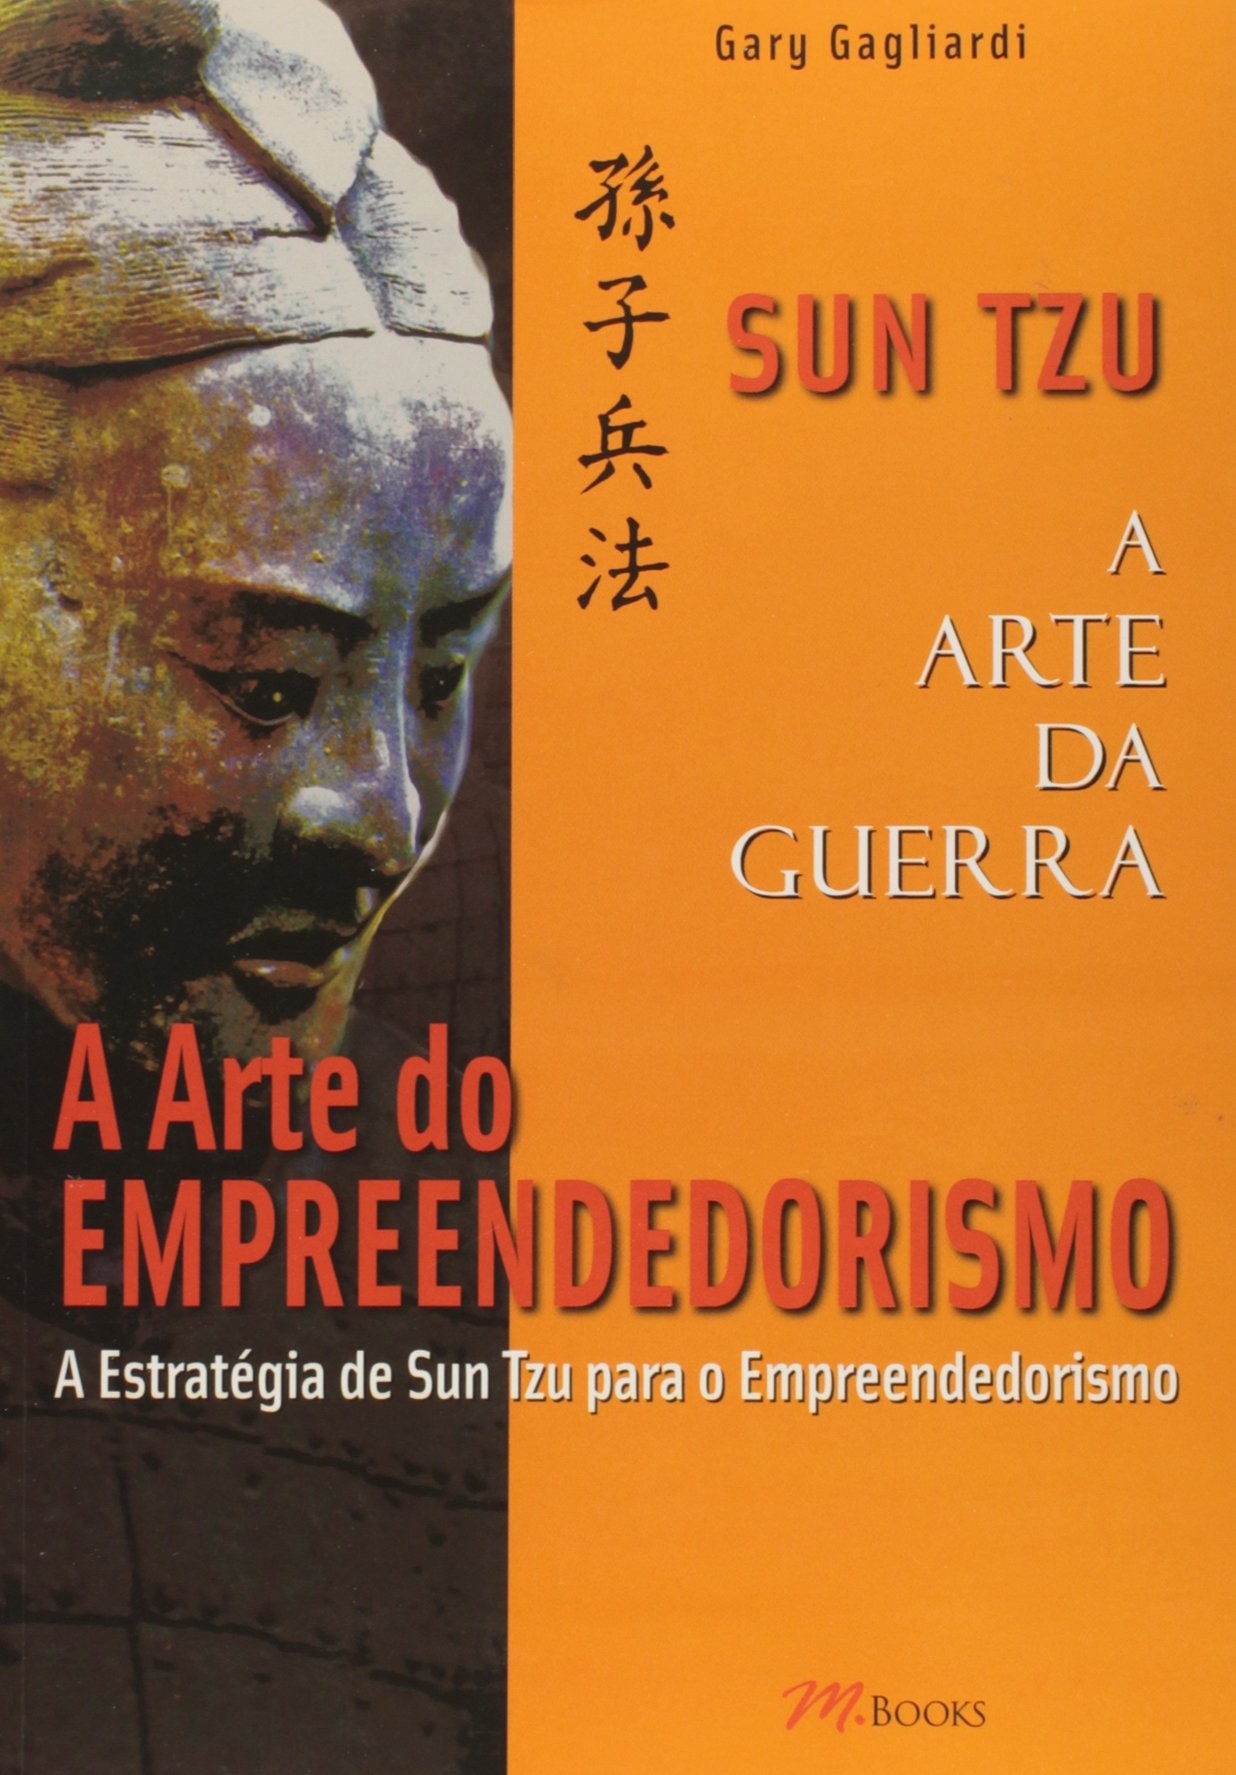 Sun Tzu - A Arte da Guerra - A Arte do Empreendedorismo